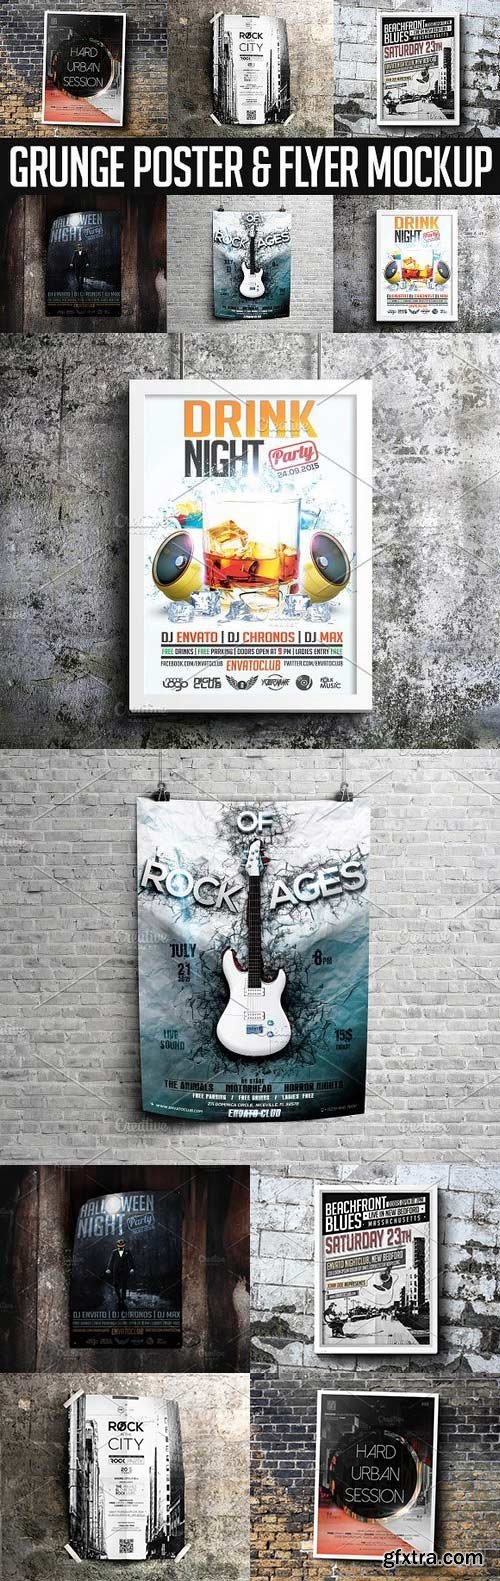 CM - Grunge Poster & Flyer Mockup 1172863